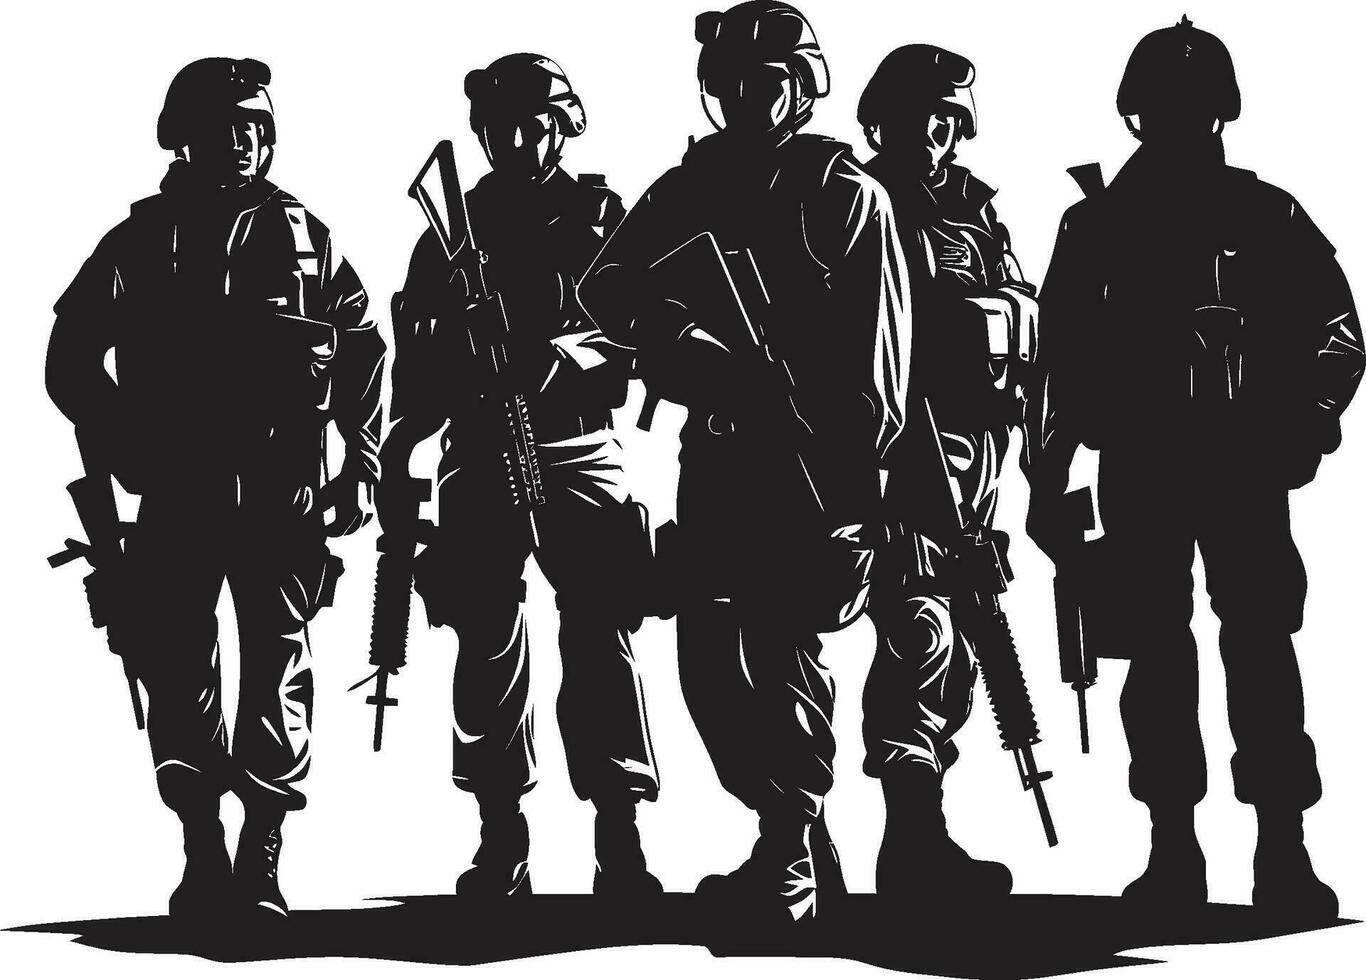 speciaal ops eenheid vector leger vorming soldaat s voorhoede zwart dwingen logo